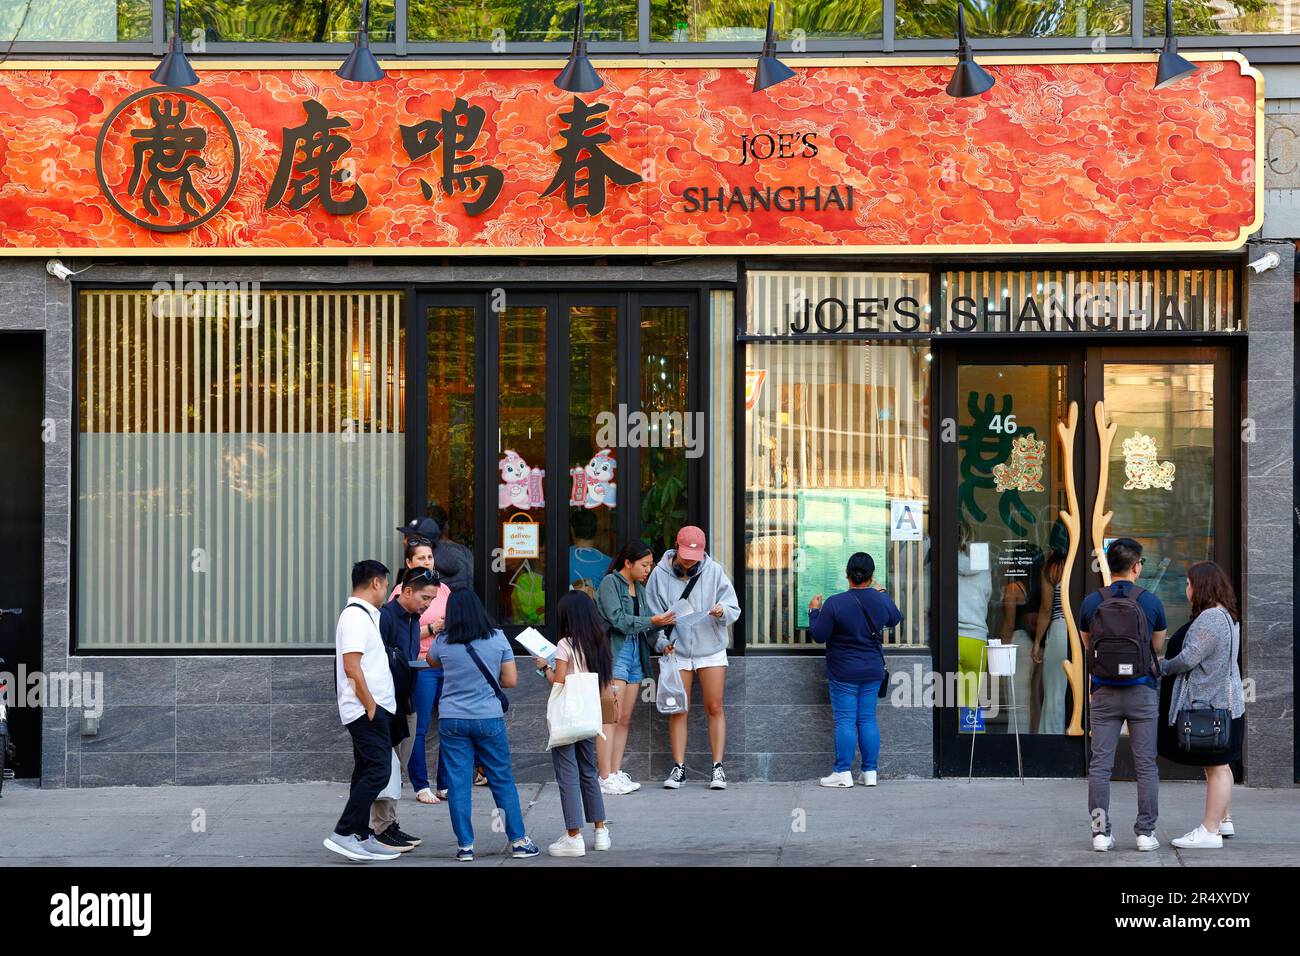 Joe's Shanghai 鹿鳴春, 46 Bowery, New York, New York, New York, boutique de New York photo d'un restaurant de soupe populaire dans le quartier chinois de Manhattan Banque D'Images